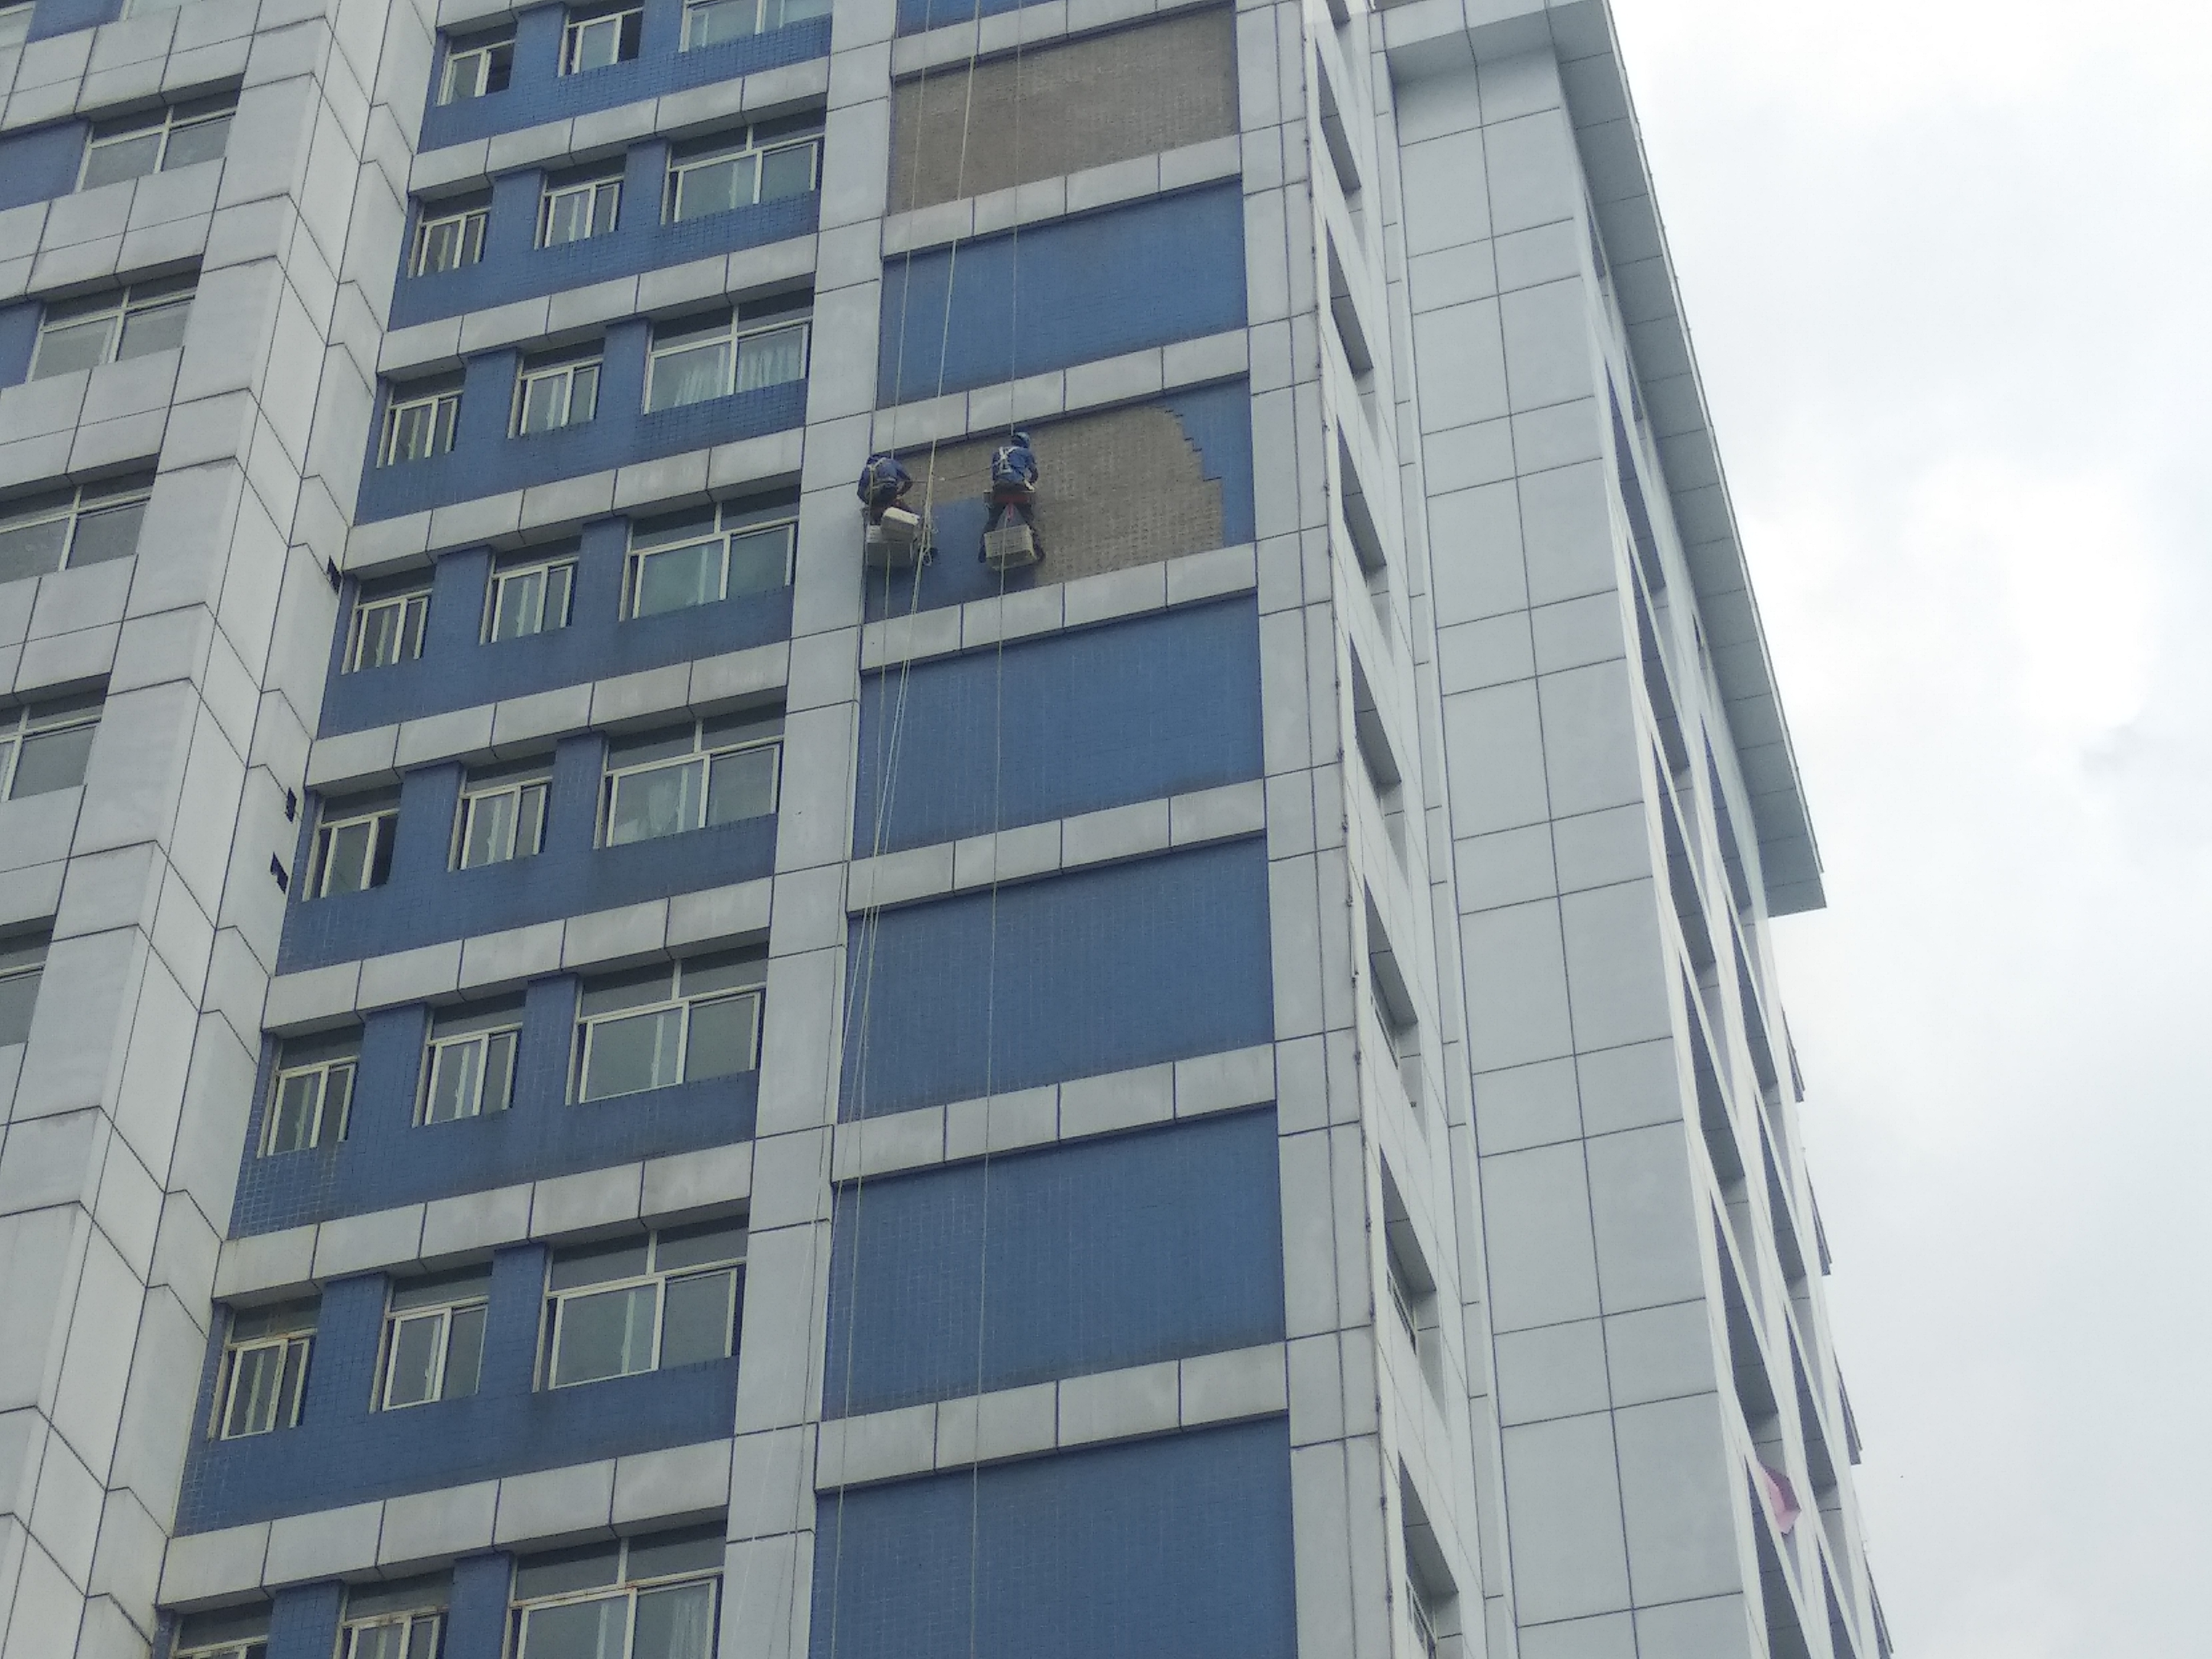 安岳人民医院住院大楼外墙瓷砖脱落,工人师傅正在高空作业剃外墙砖